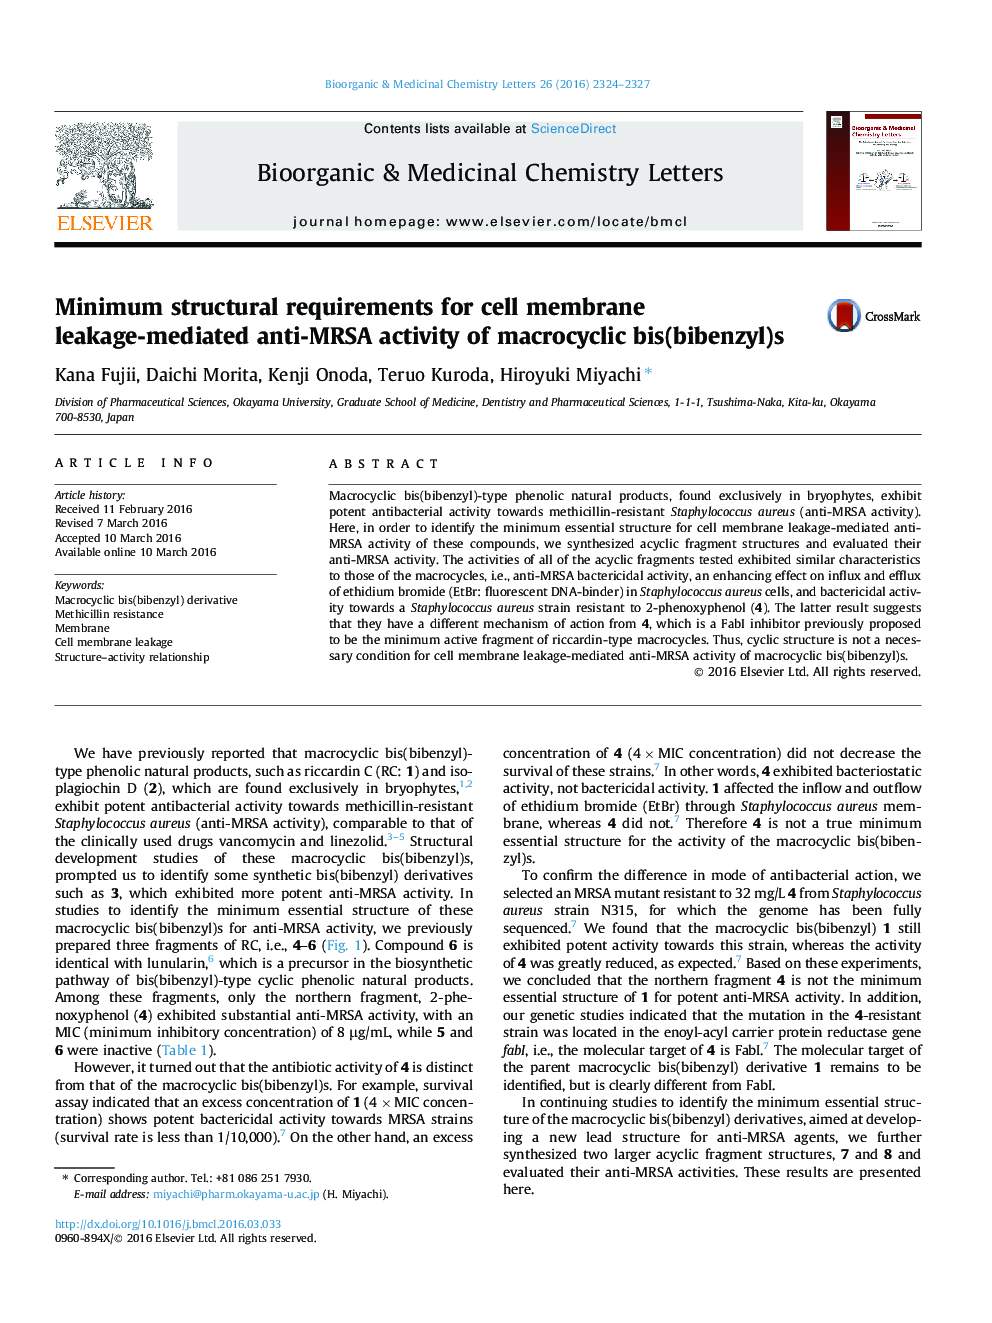 الزامات ساختاری حداقلی برای فعالیت ضد MRSA به واسطه نشت غشای سلول از bis ماکروسیکلیک (بیبنزیل) 